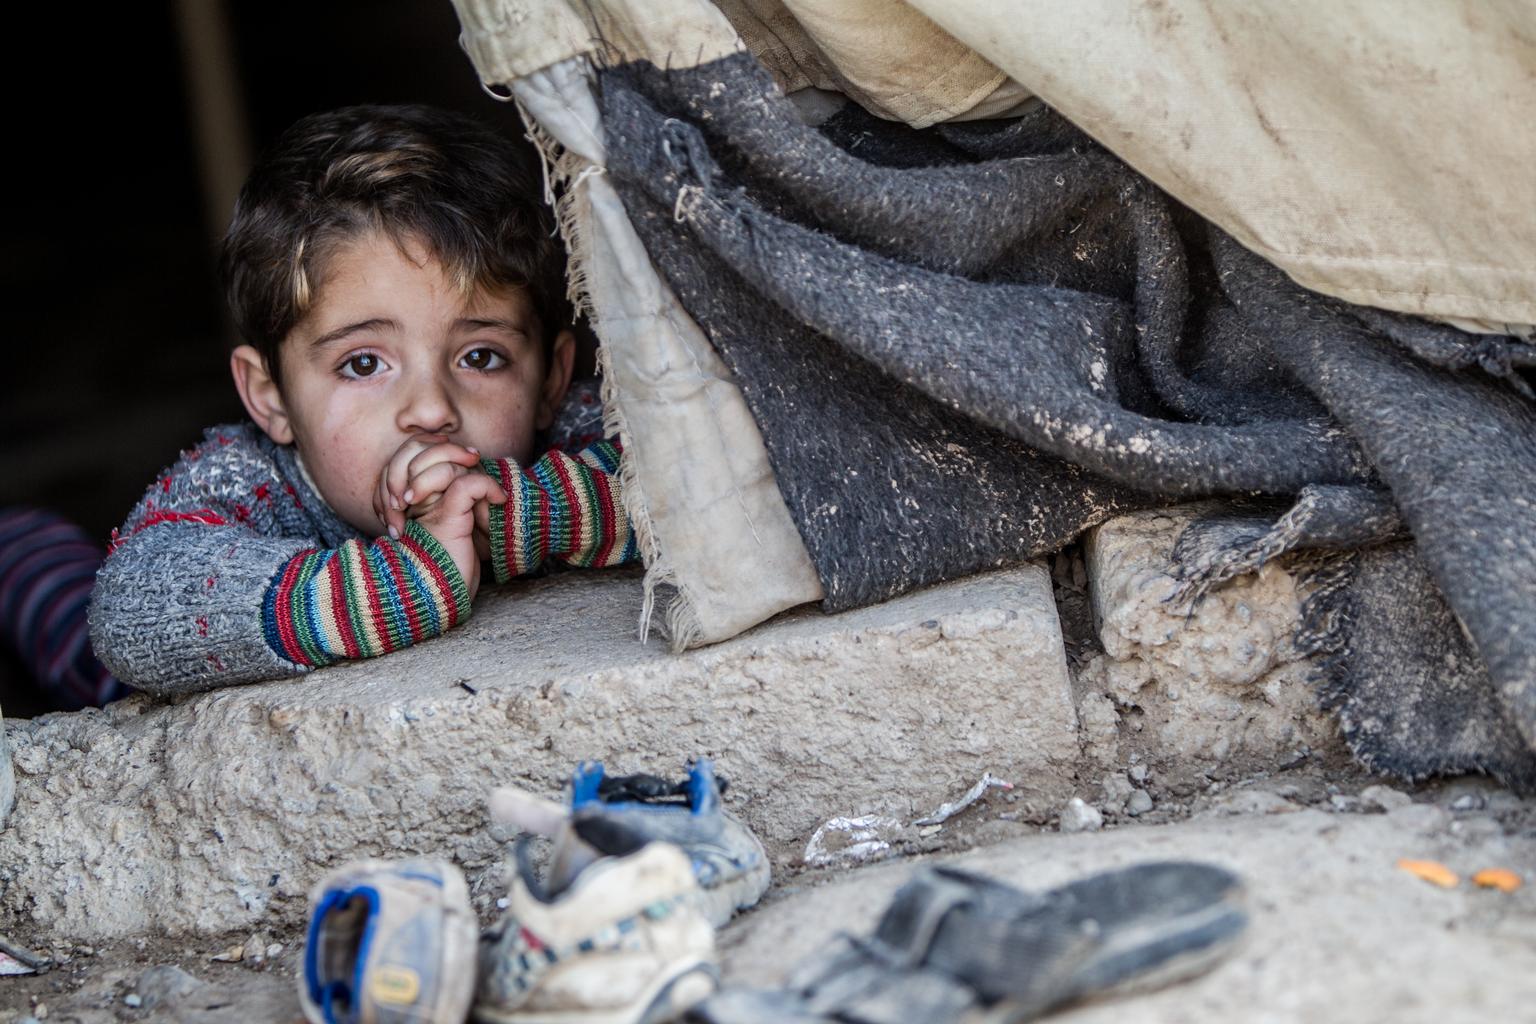  Uno de cada 9 niños vive en zona de guerra: Unicef